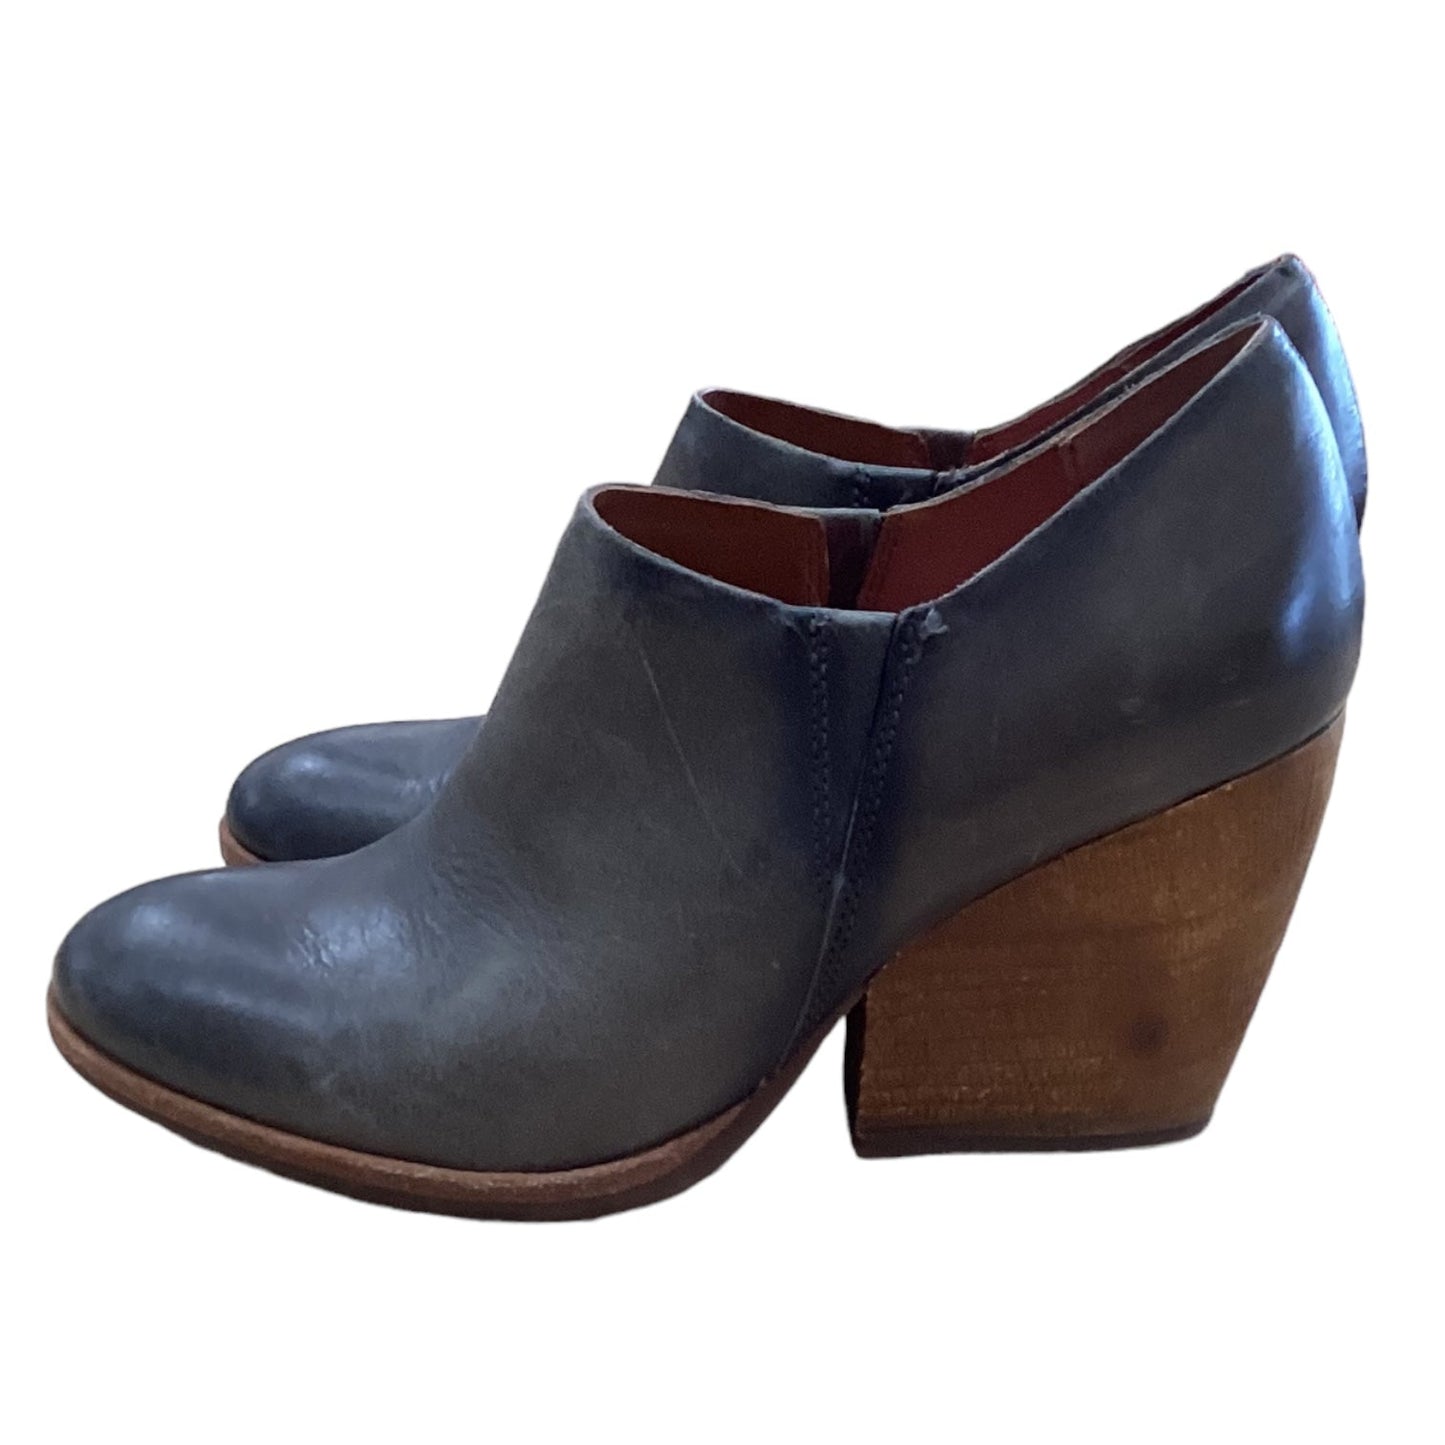 Grey Shoes Designer Kork Ease, Size 7.5